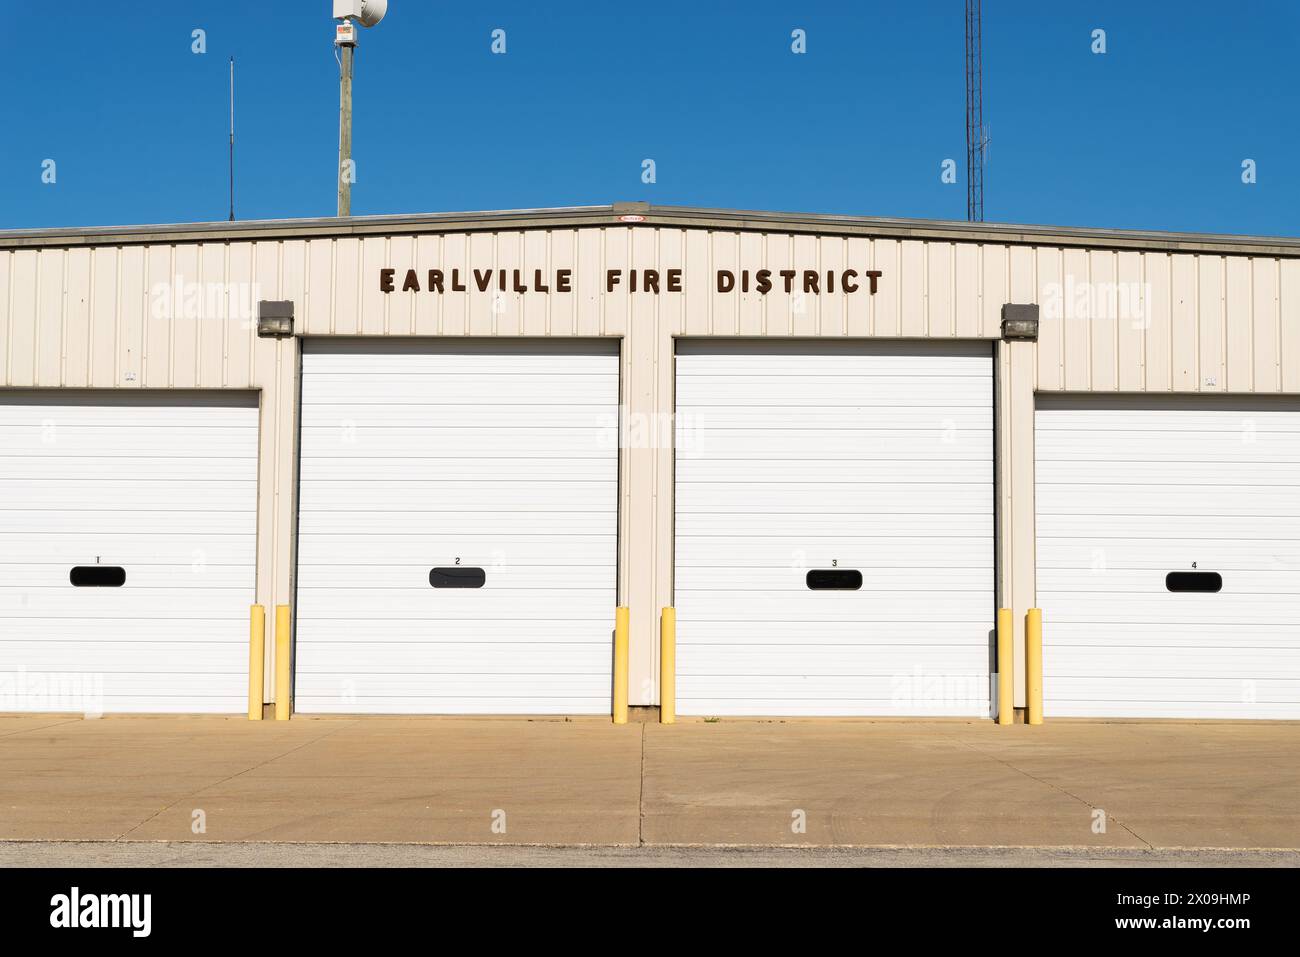 Earlville, Illinois - USA - 8. April 2024: Außenansicht des Earlville Fire District Gebäudes in Earlville, Illinois, USA. Stockfoto